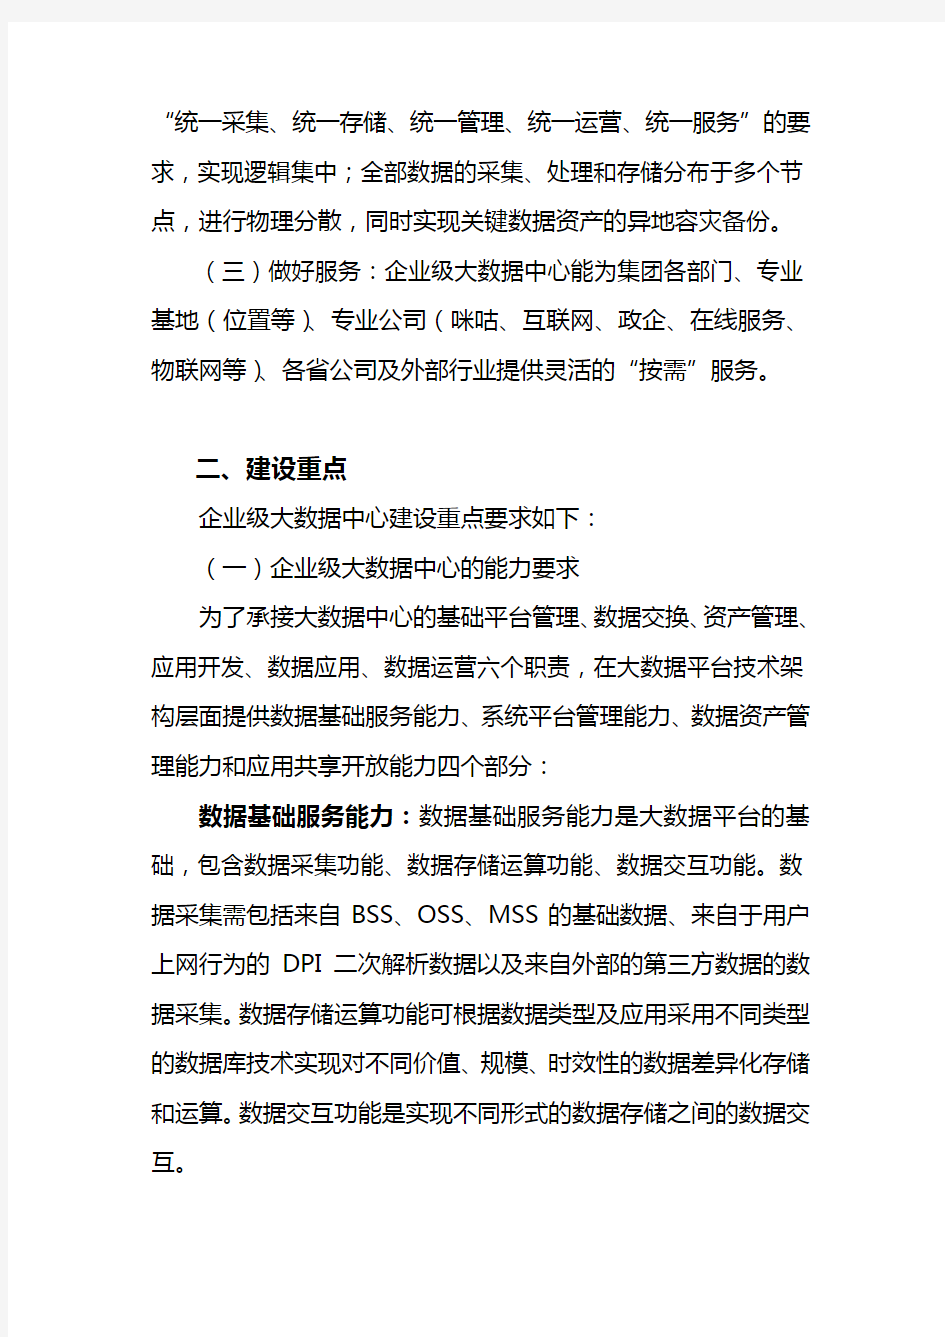 (完整版)中国移动企业级大数据中心建设指导意见V1.1(终版)资料